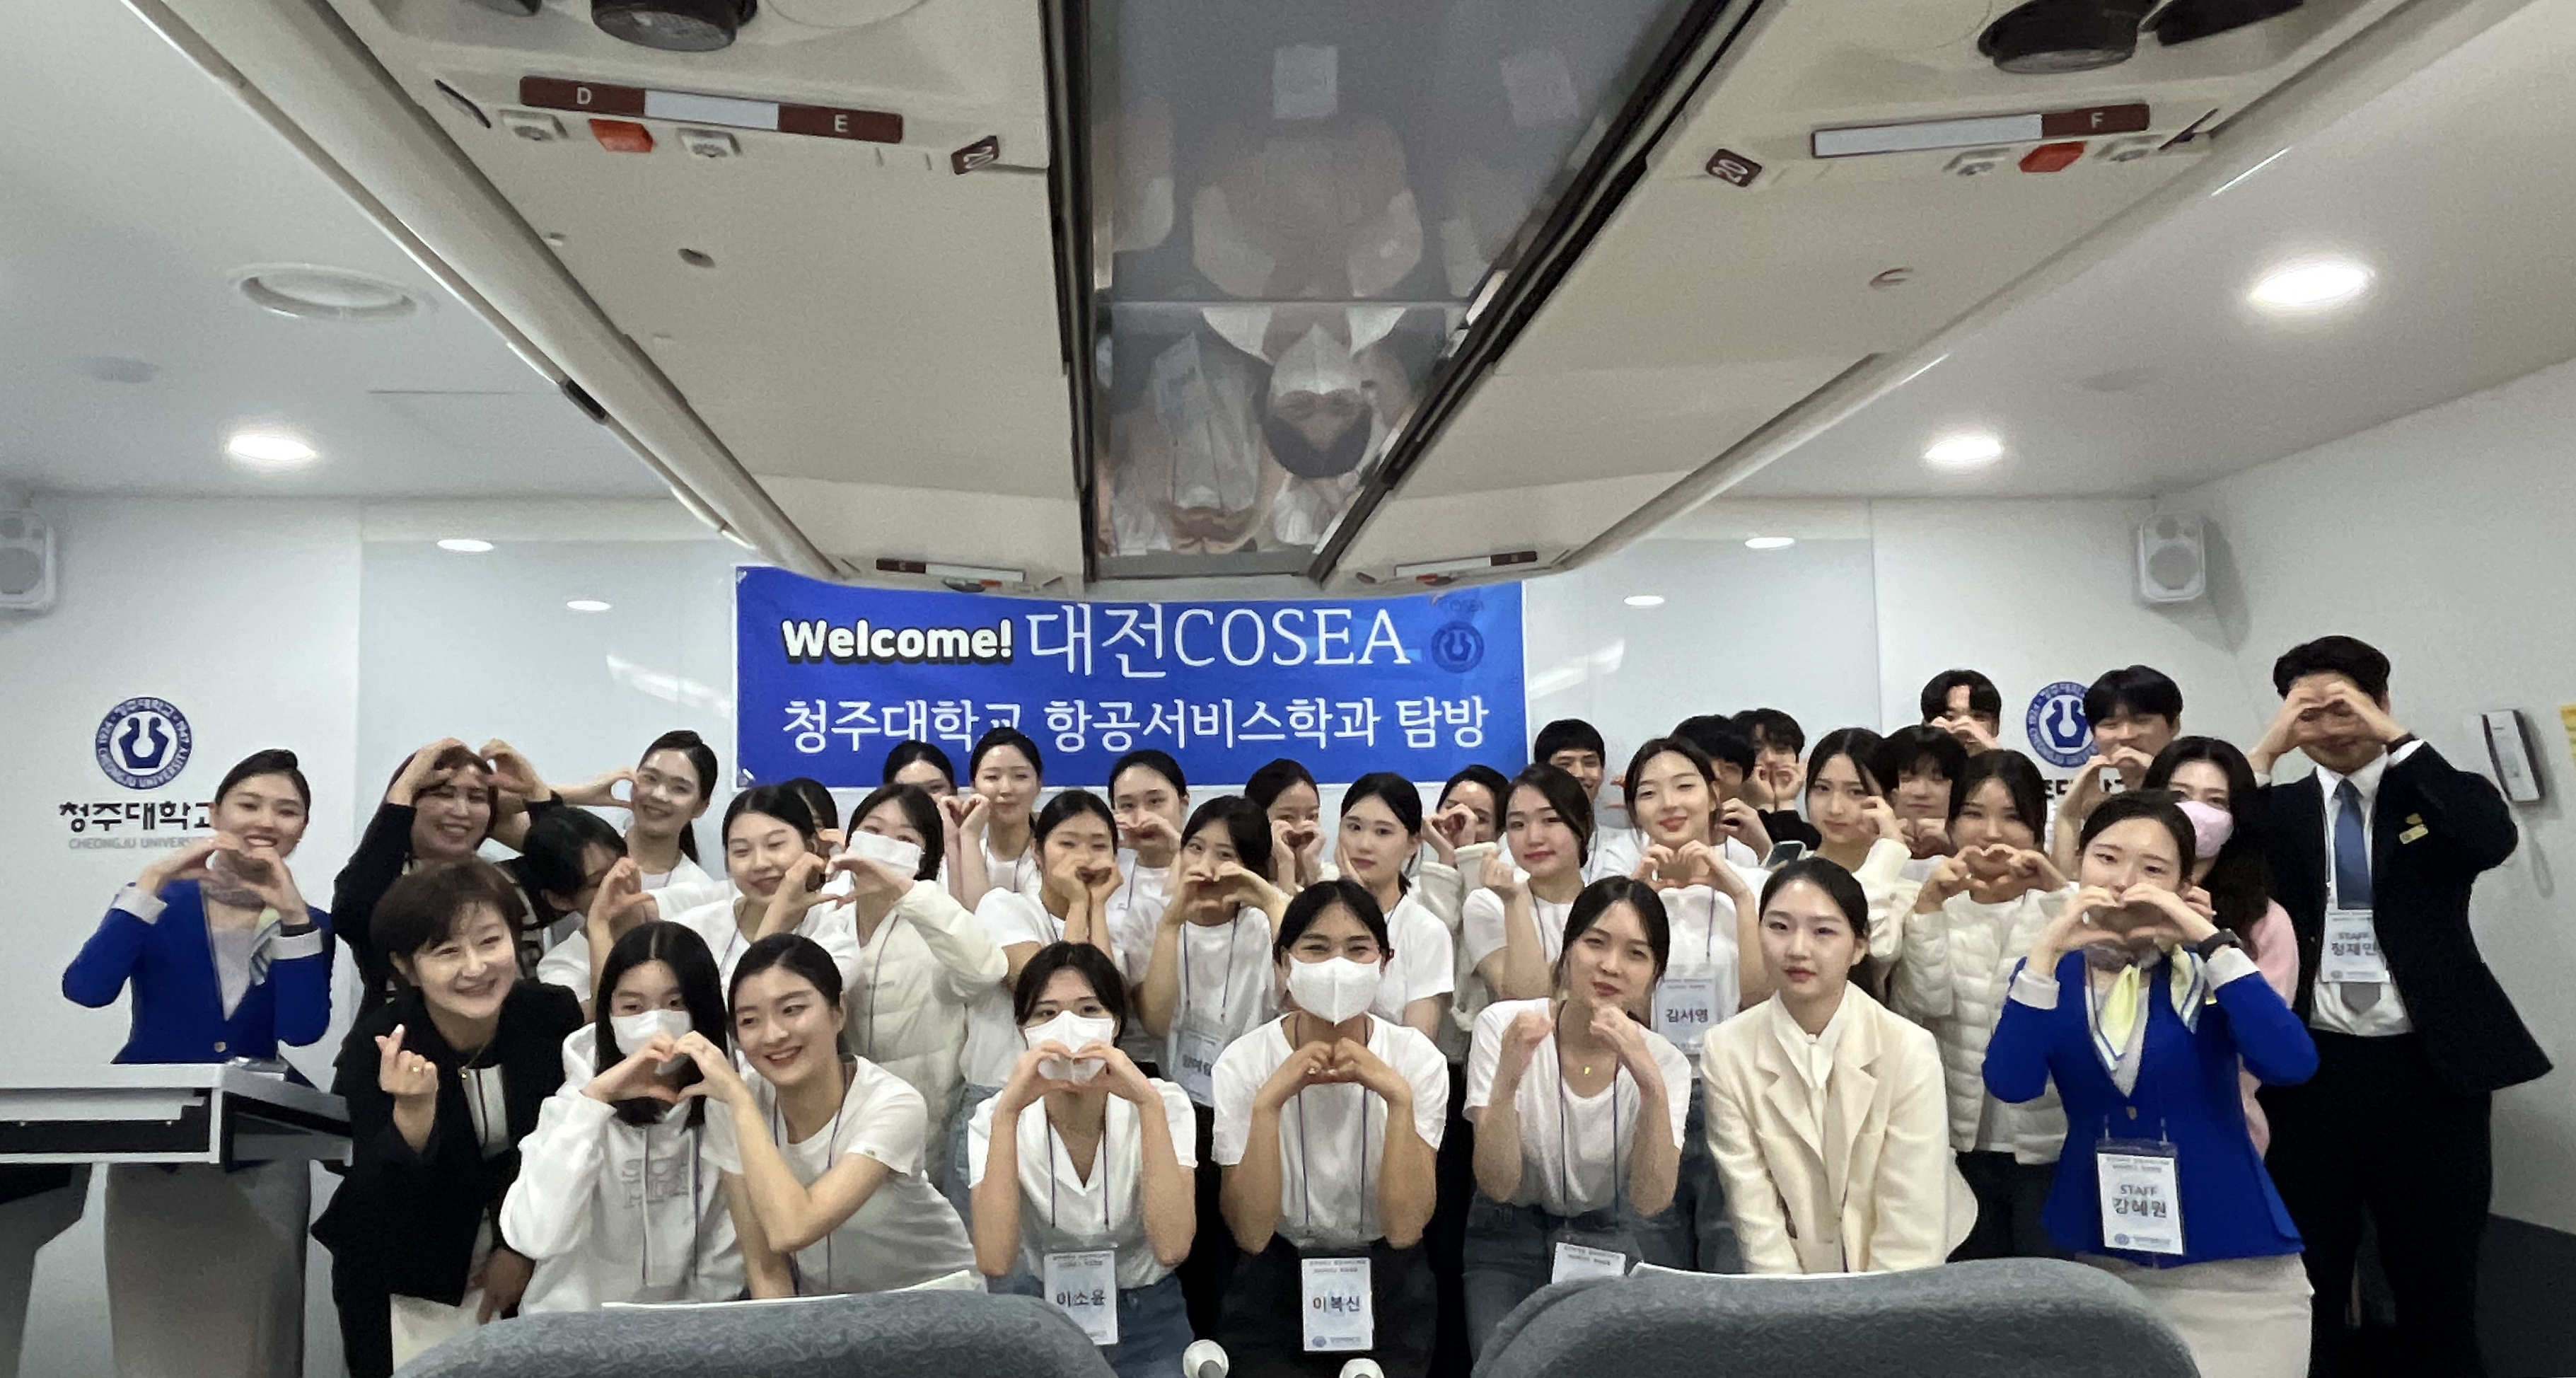  청주대학교(총장 차천수) 항공서비스학과는 11일 대전 코세아 항공승무원 학원생 30명을 초청, 캠퍼스 투어 및 항공서비스학과 체험을 진행했다.